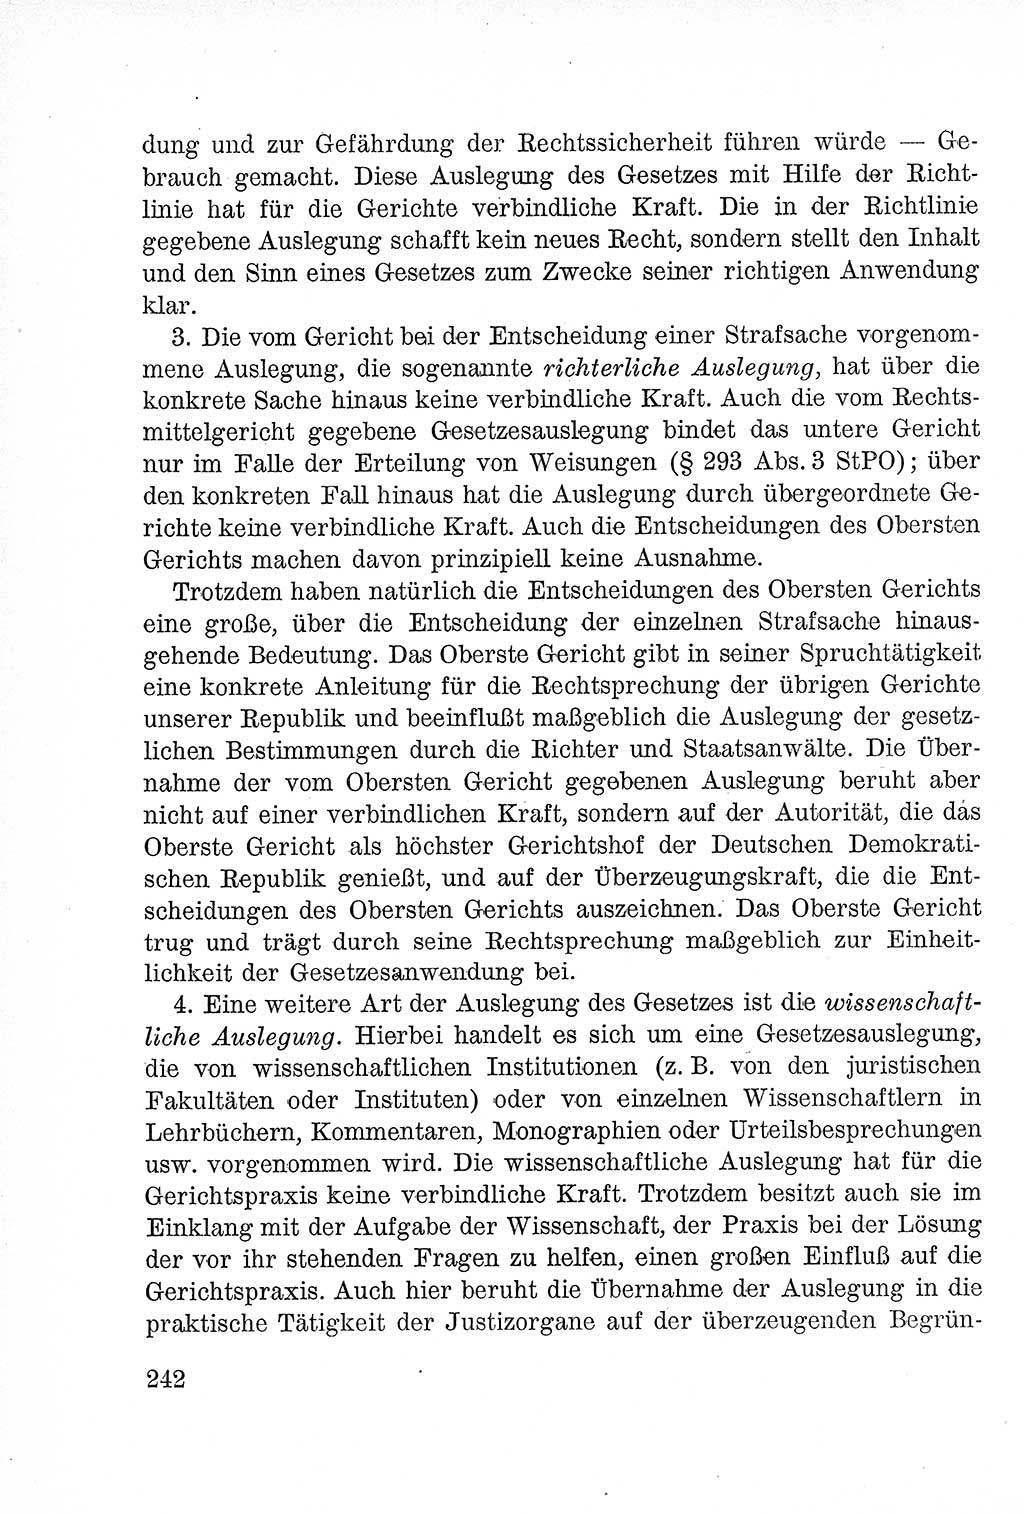 Lehrbuch des Strafrechts der Deutschen Demokratischen Republik (DDR), Allgemeiner Teil 1957, Seite 242 (Lb. Strafr. DDR AT 1957, S. 242)